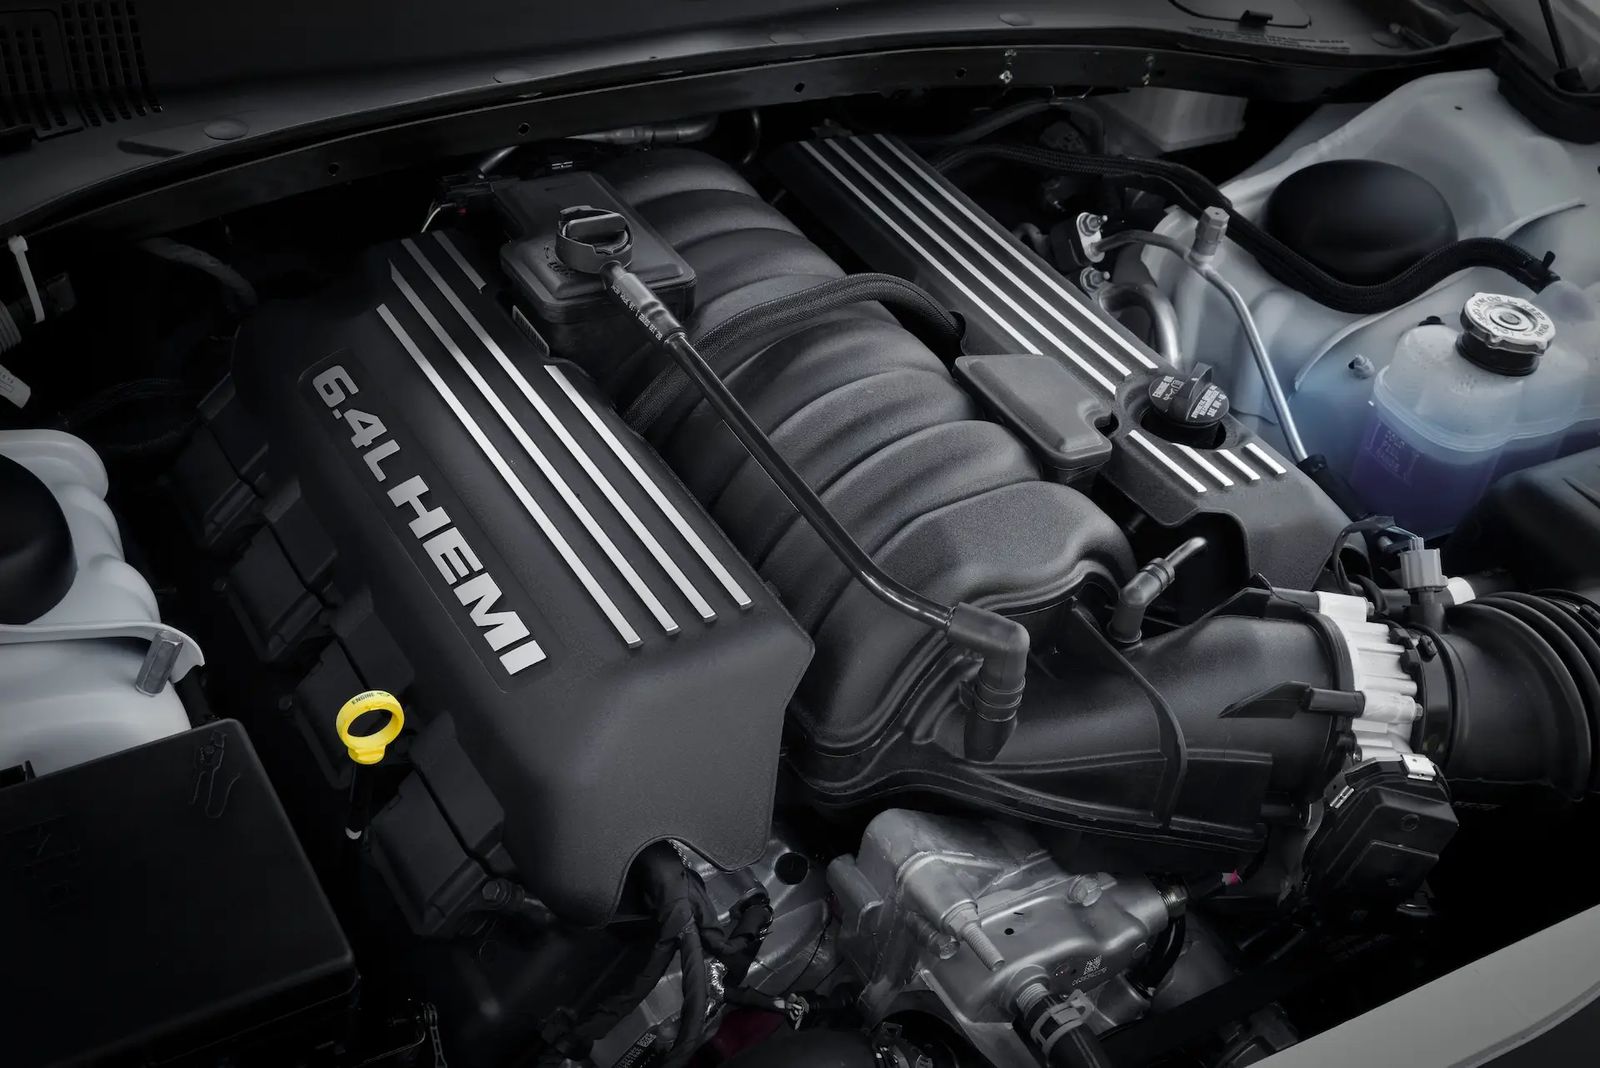 6,4-литровый 392 Hemi V8 мощностью 485 лошадиных сил и 644 Нм крутящего момента (foto: chrysler)